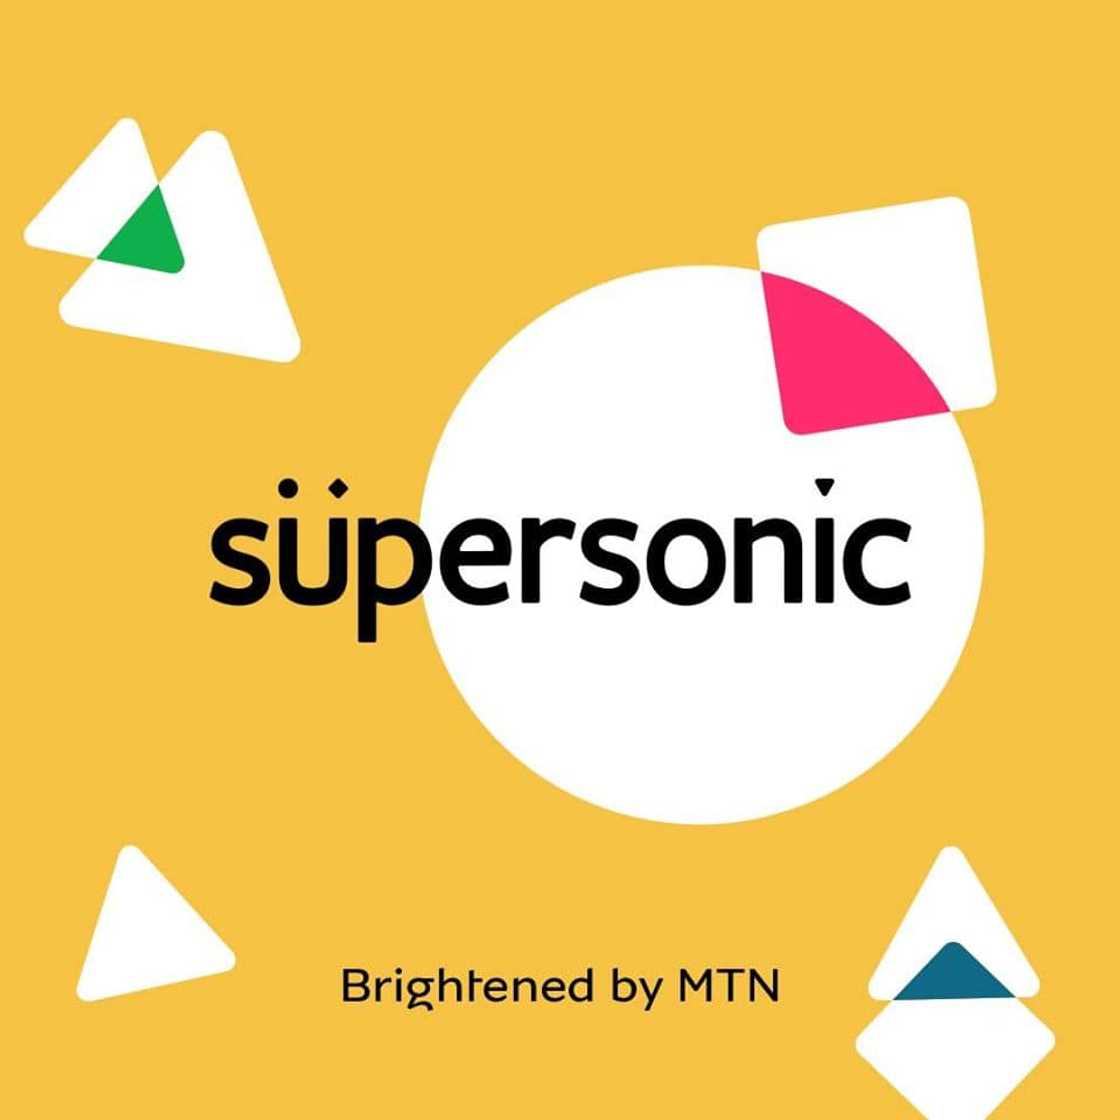 supersonic fibre deals